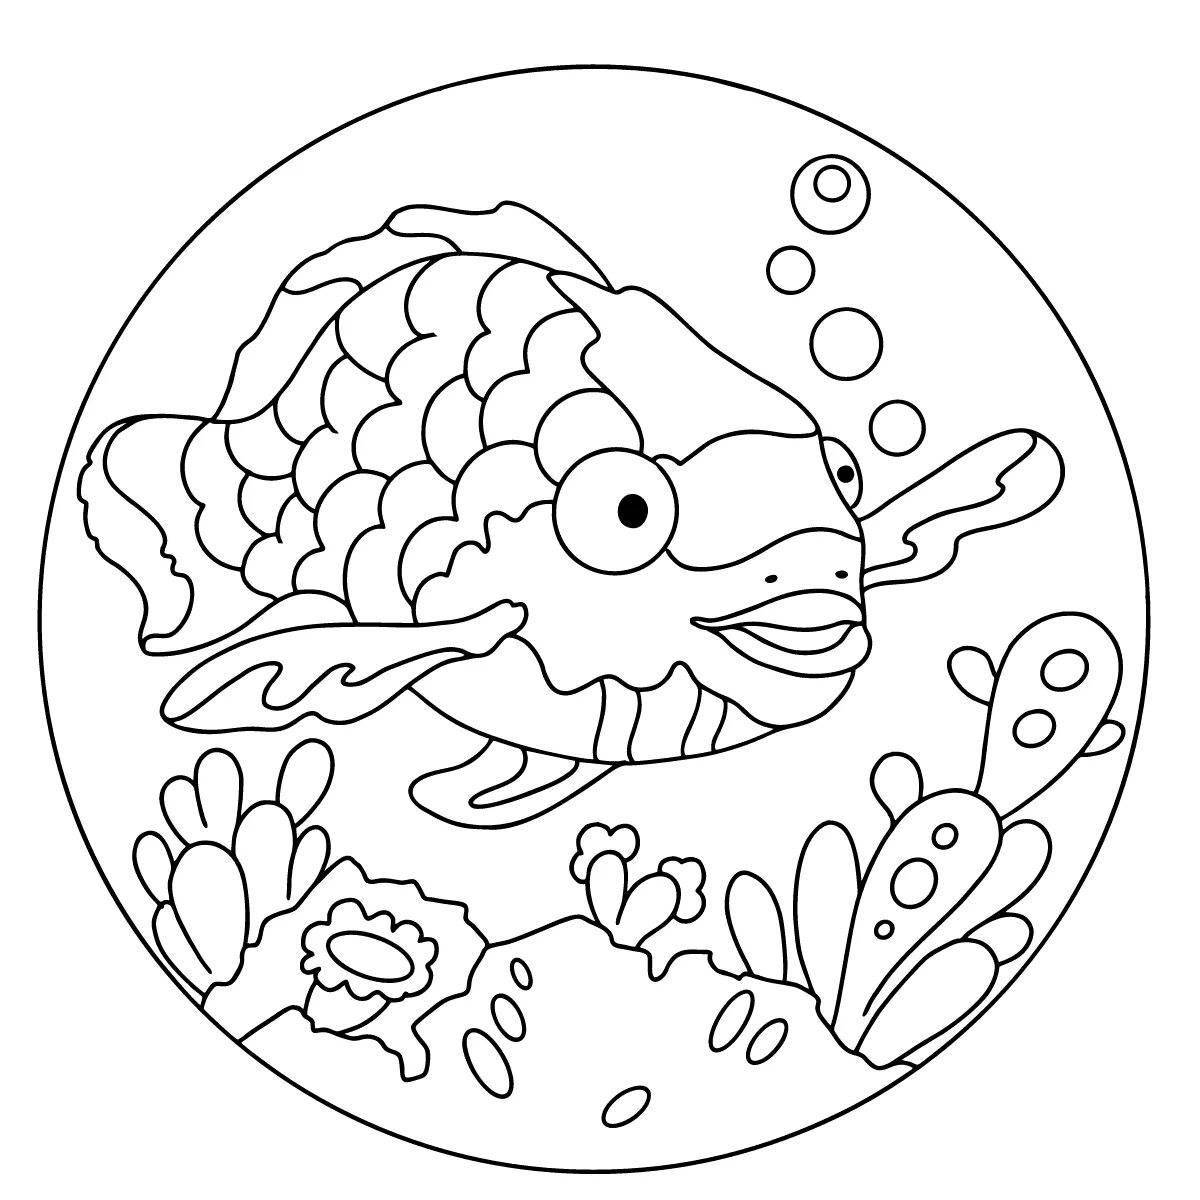 Adorable fish in the aquarium coloring book